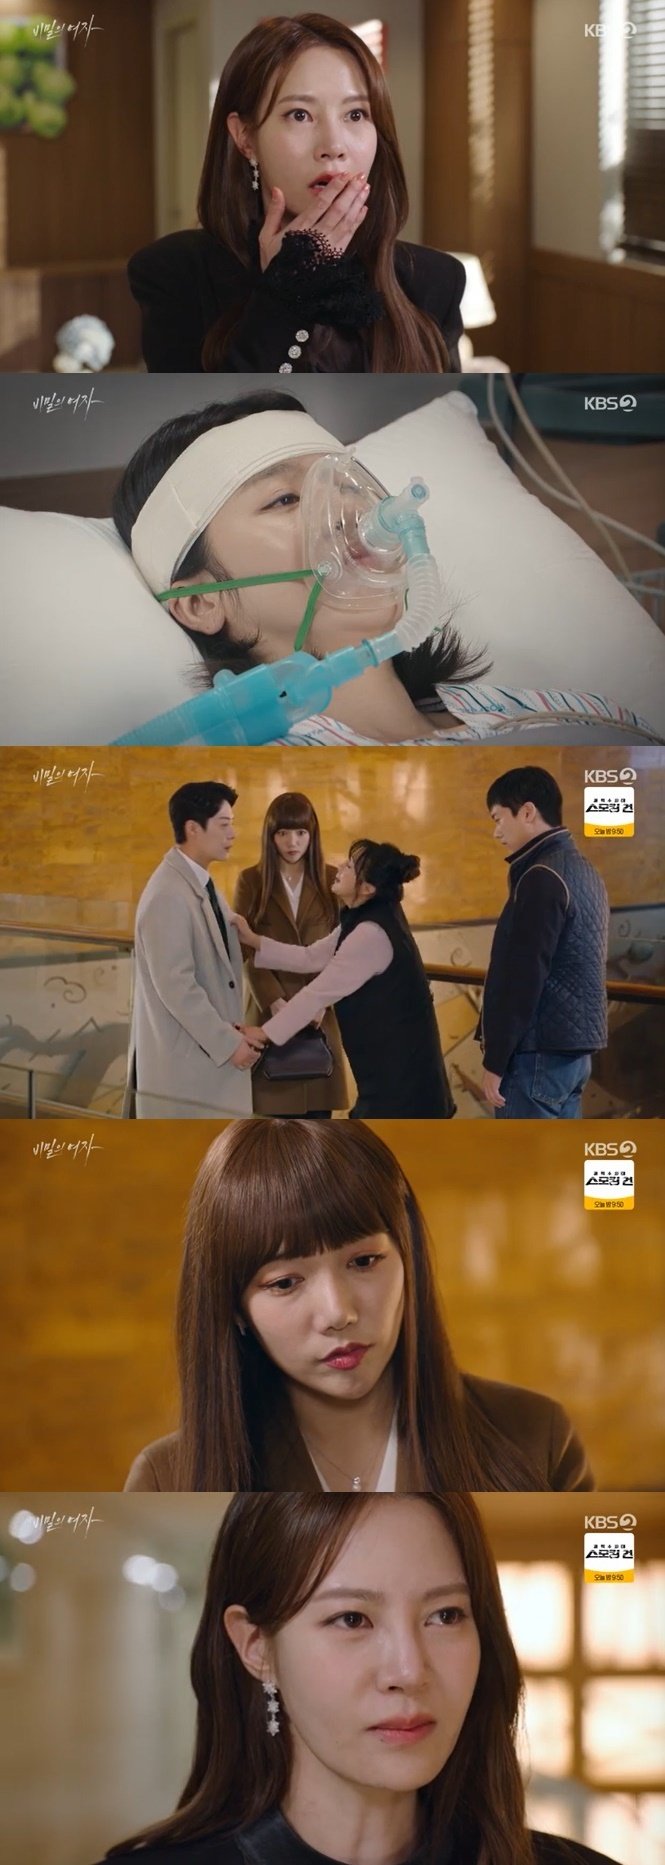 KBS 2TV '비밀의 여자' 캡처